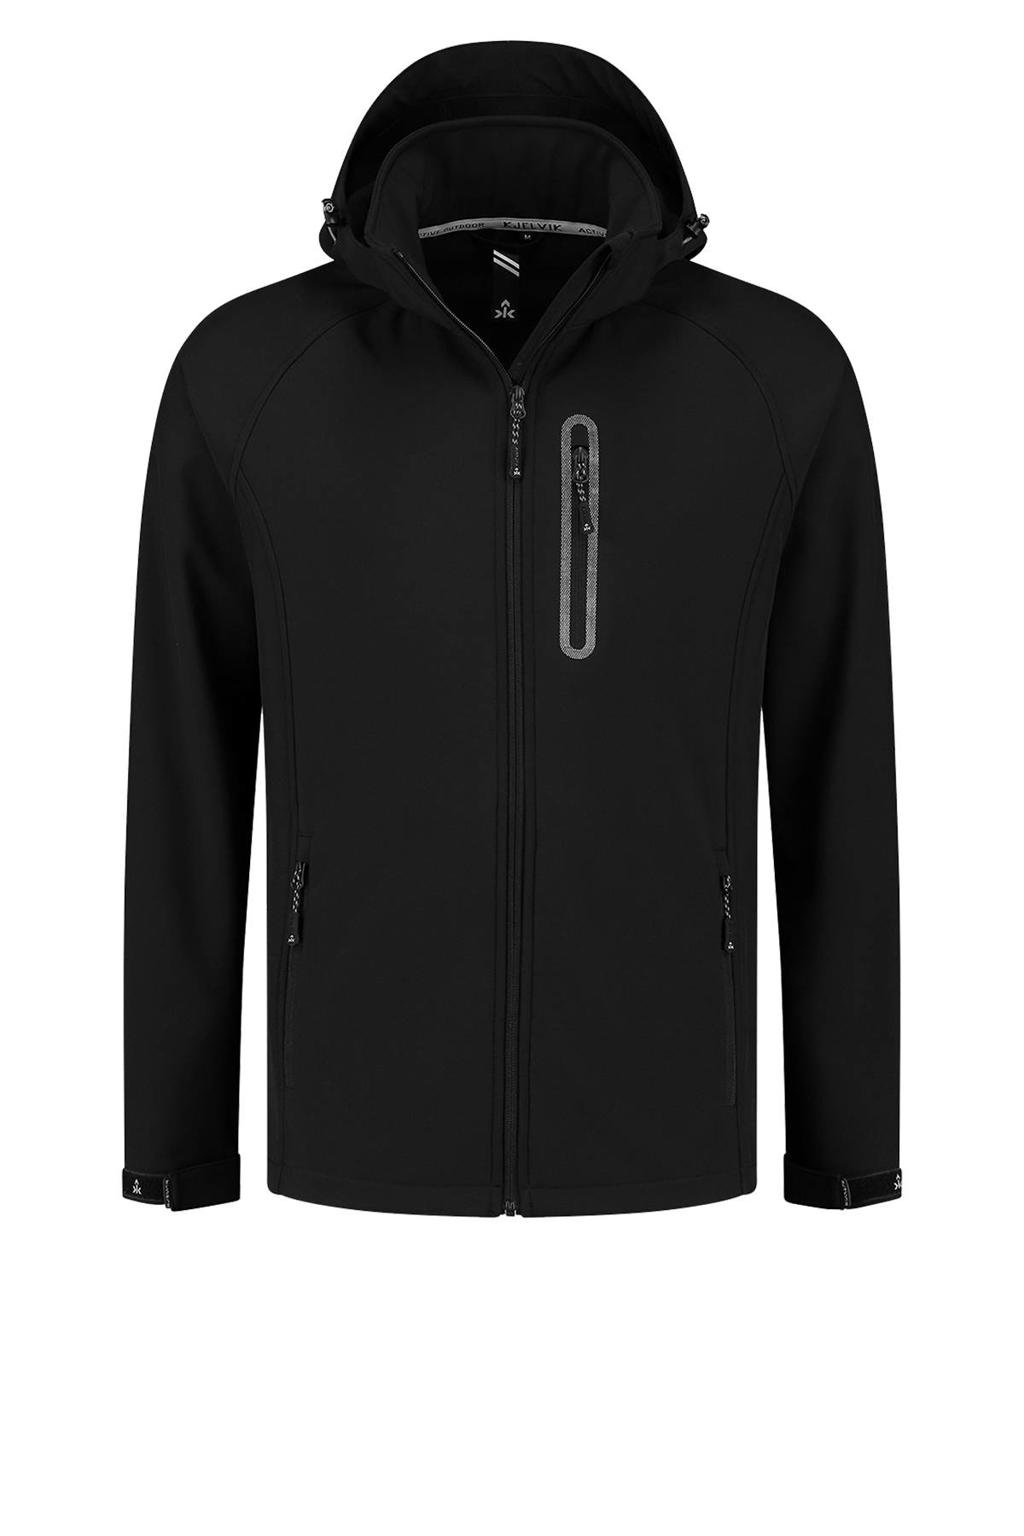 Zwarte heren Kjelvik outdoor jas Kevan van polyester met logo dessin, lange mouwen, capuchon en ritssluiting